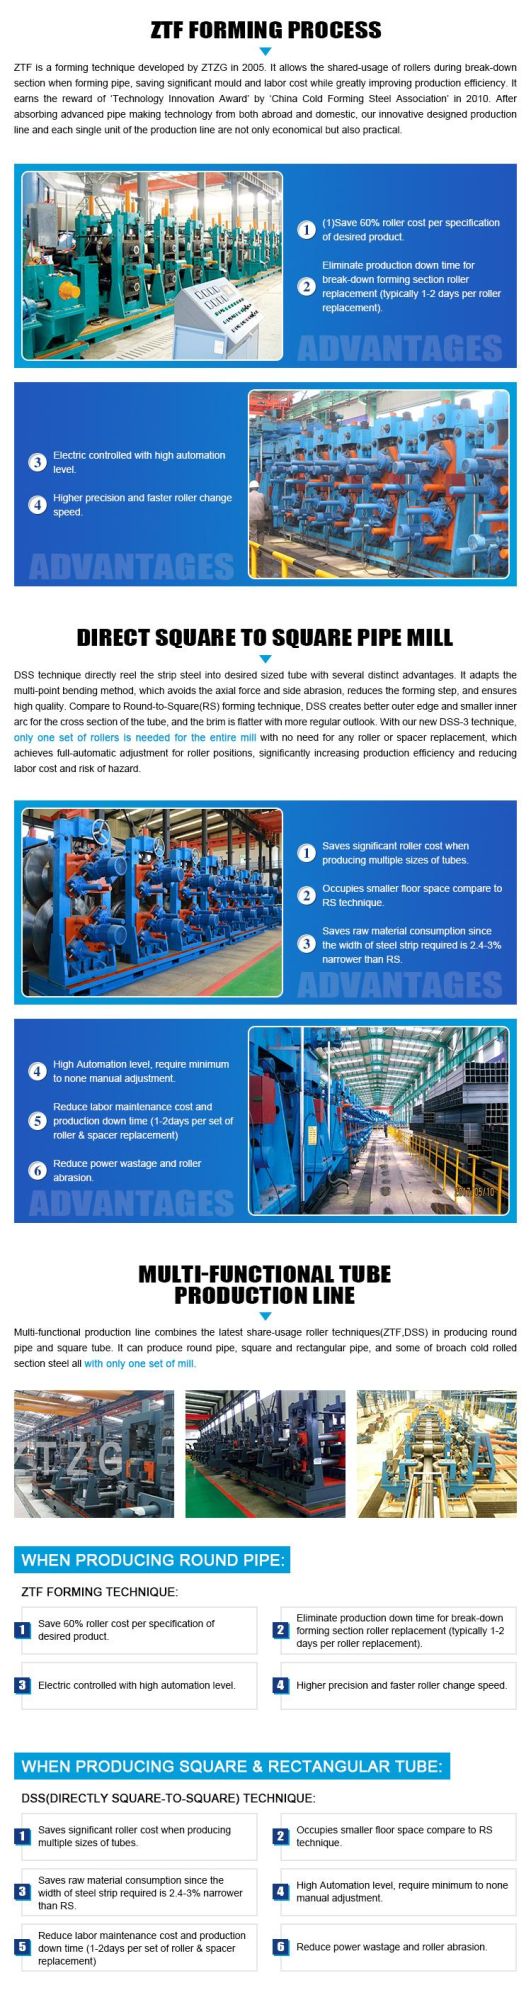 Steel Pipe Production Line 30-90m/Min 1 Year Warranty 42mm-89mm